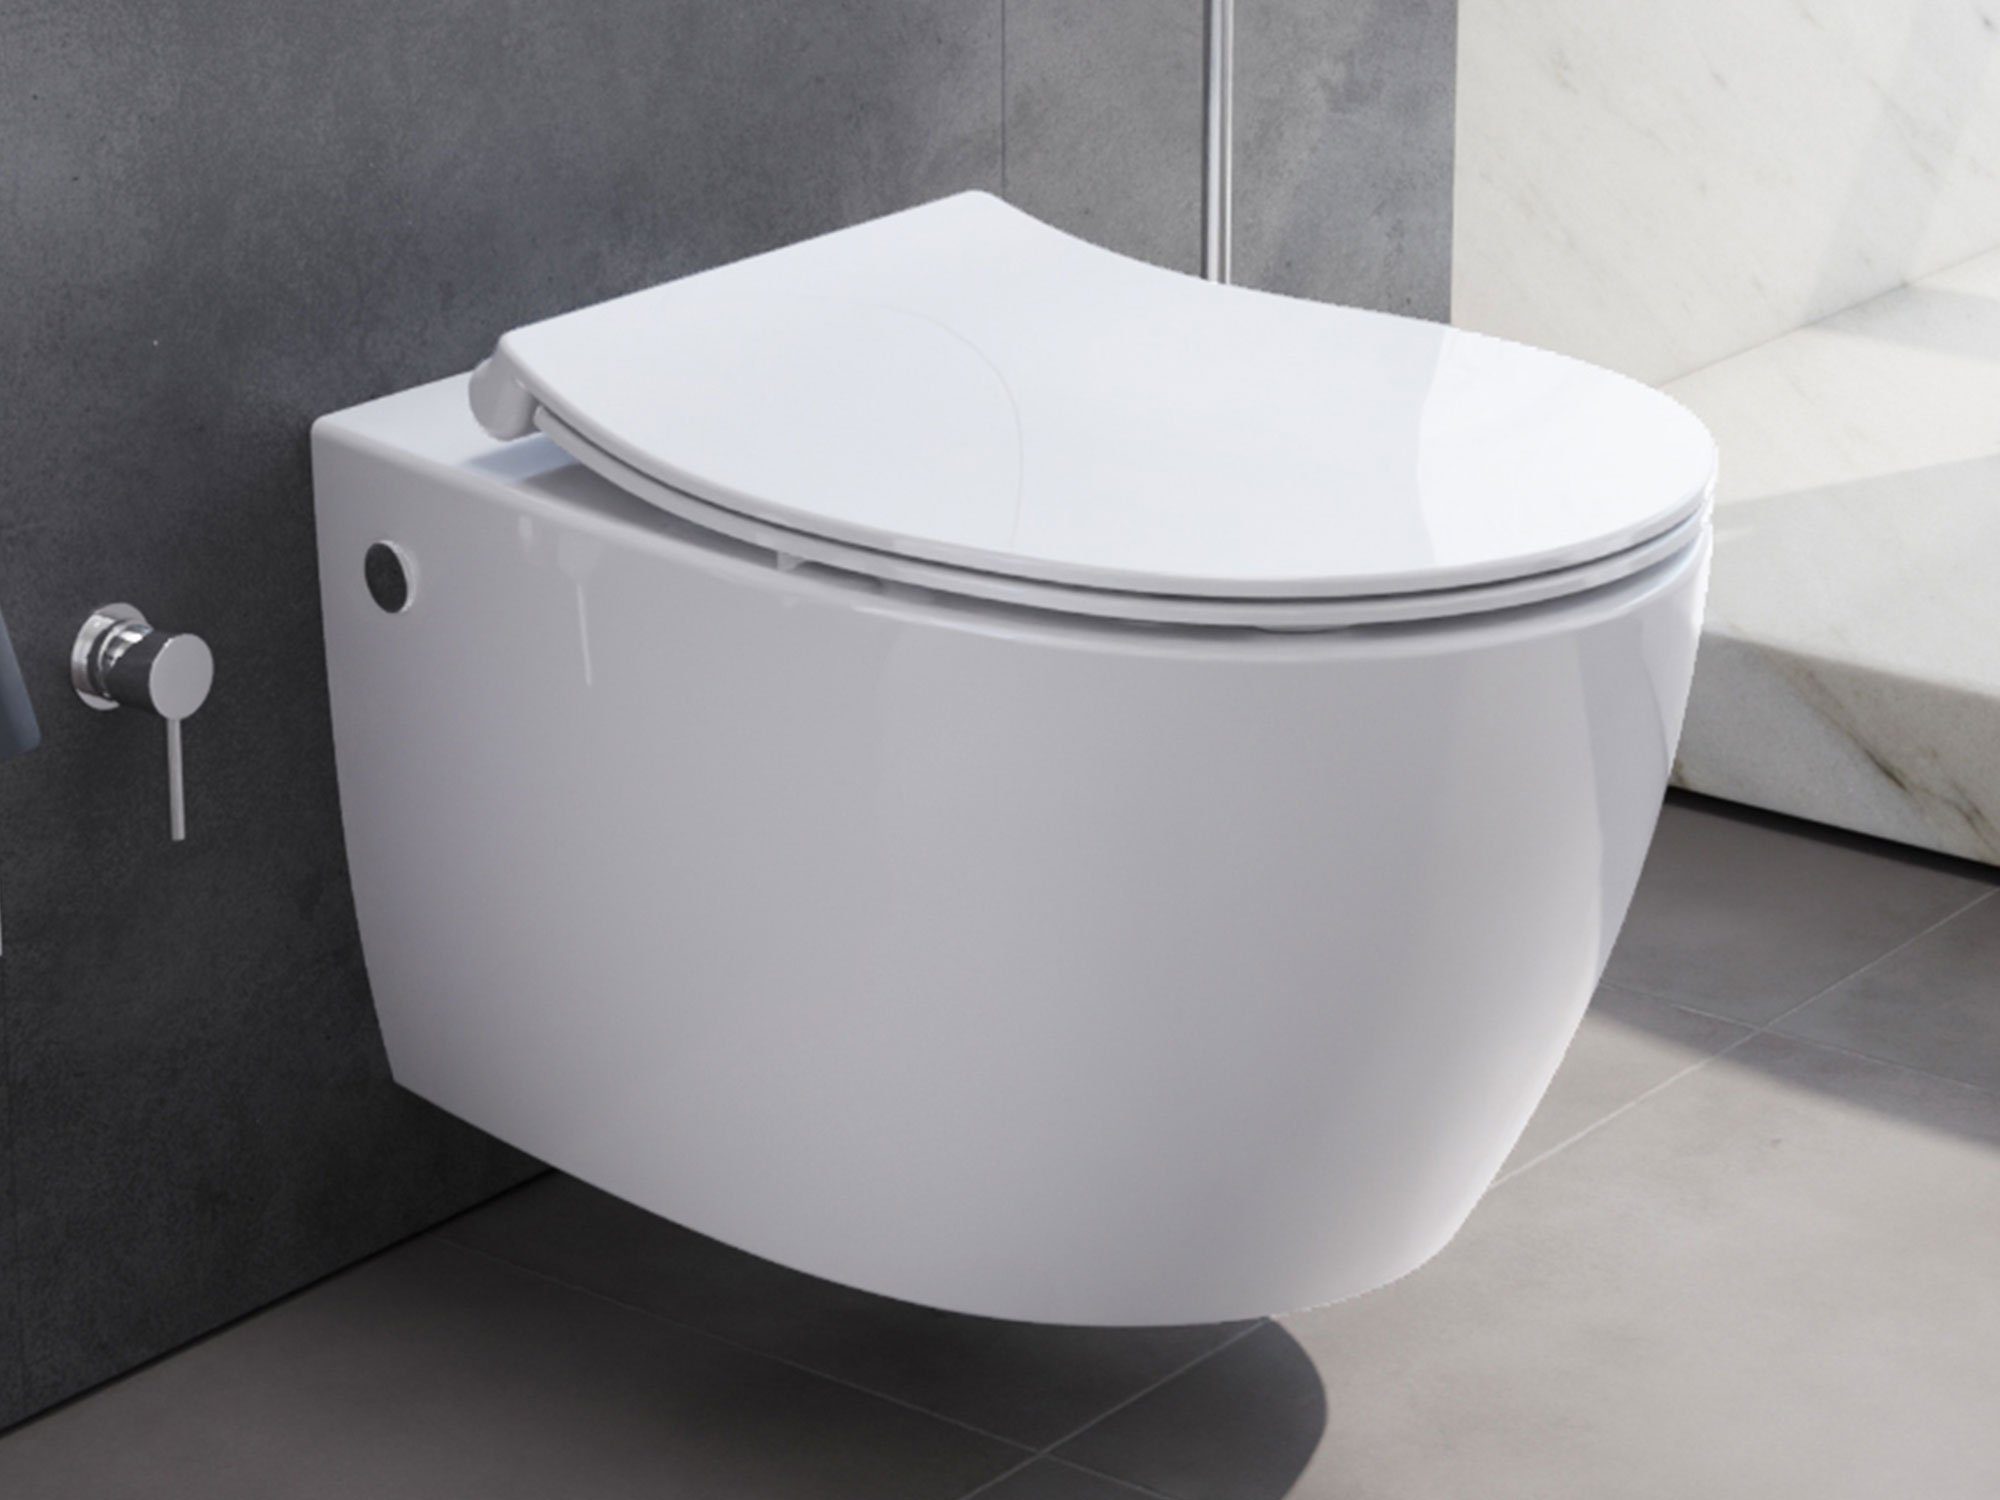 Aqua Bagno Dusch-WC Aqua Bagno Taharet WC inkl. Softclose WC-Sitz Dusch-WC Hänge-WC Toilet